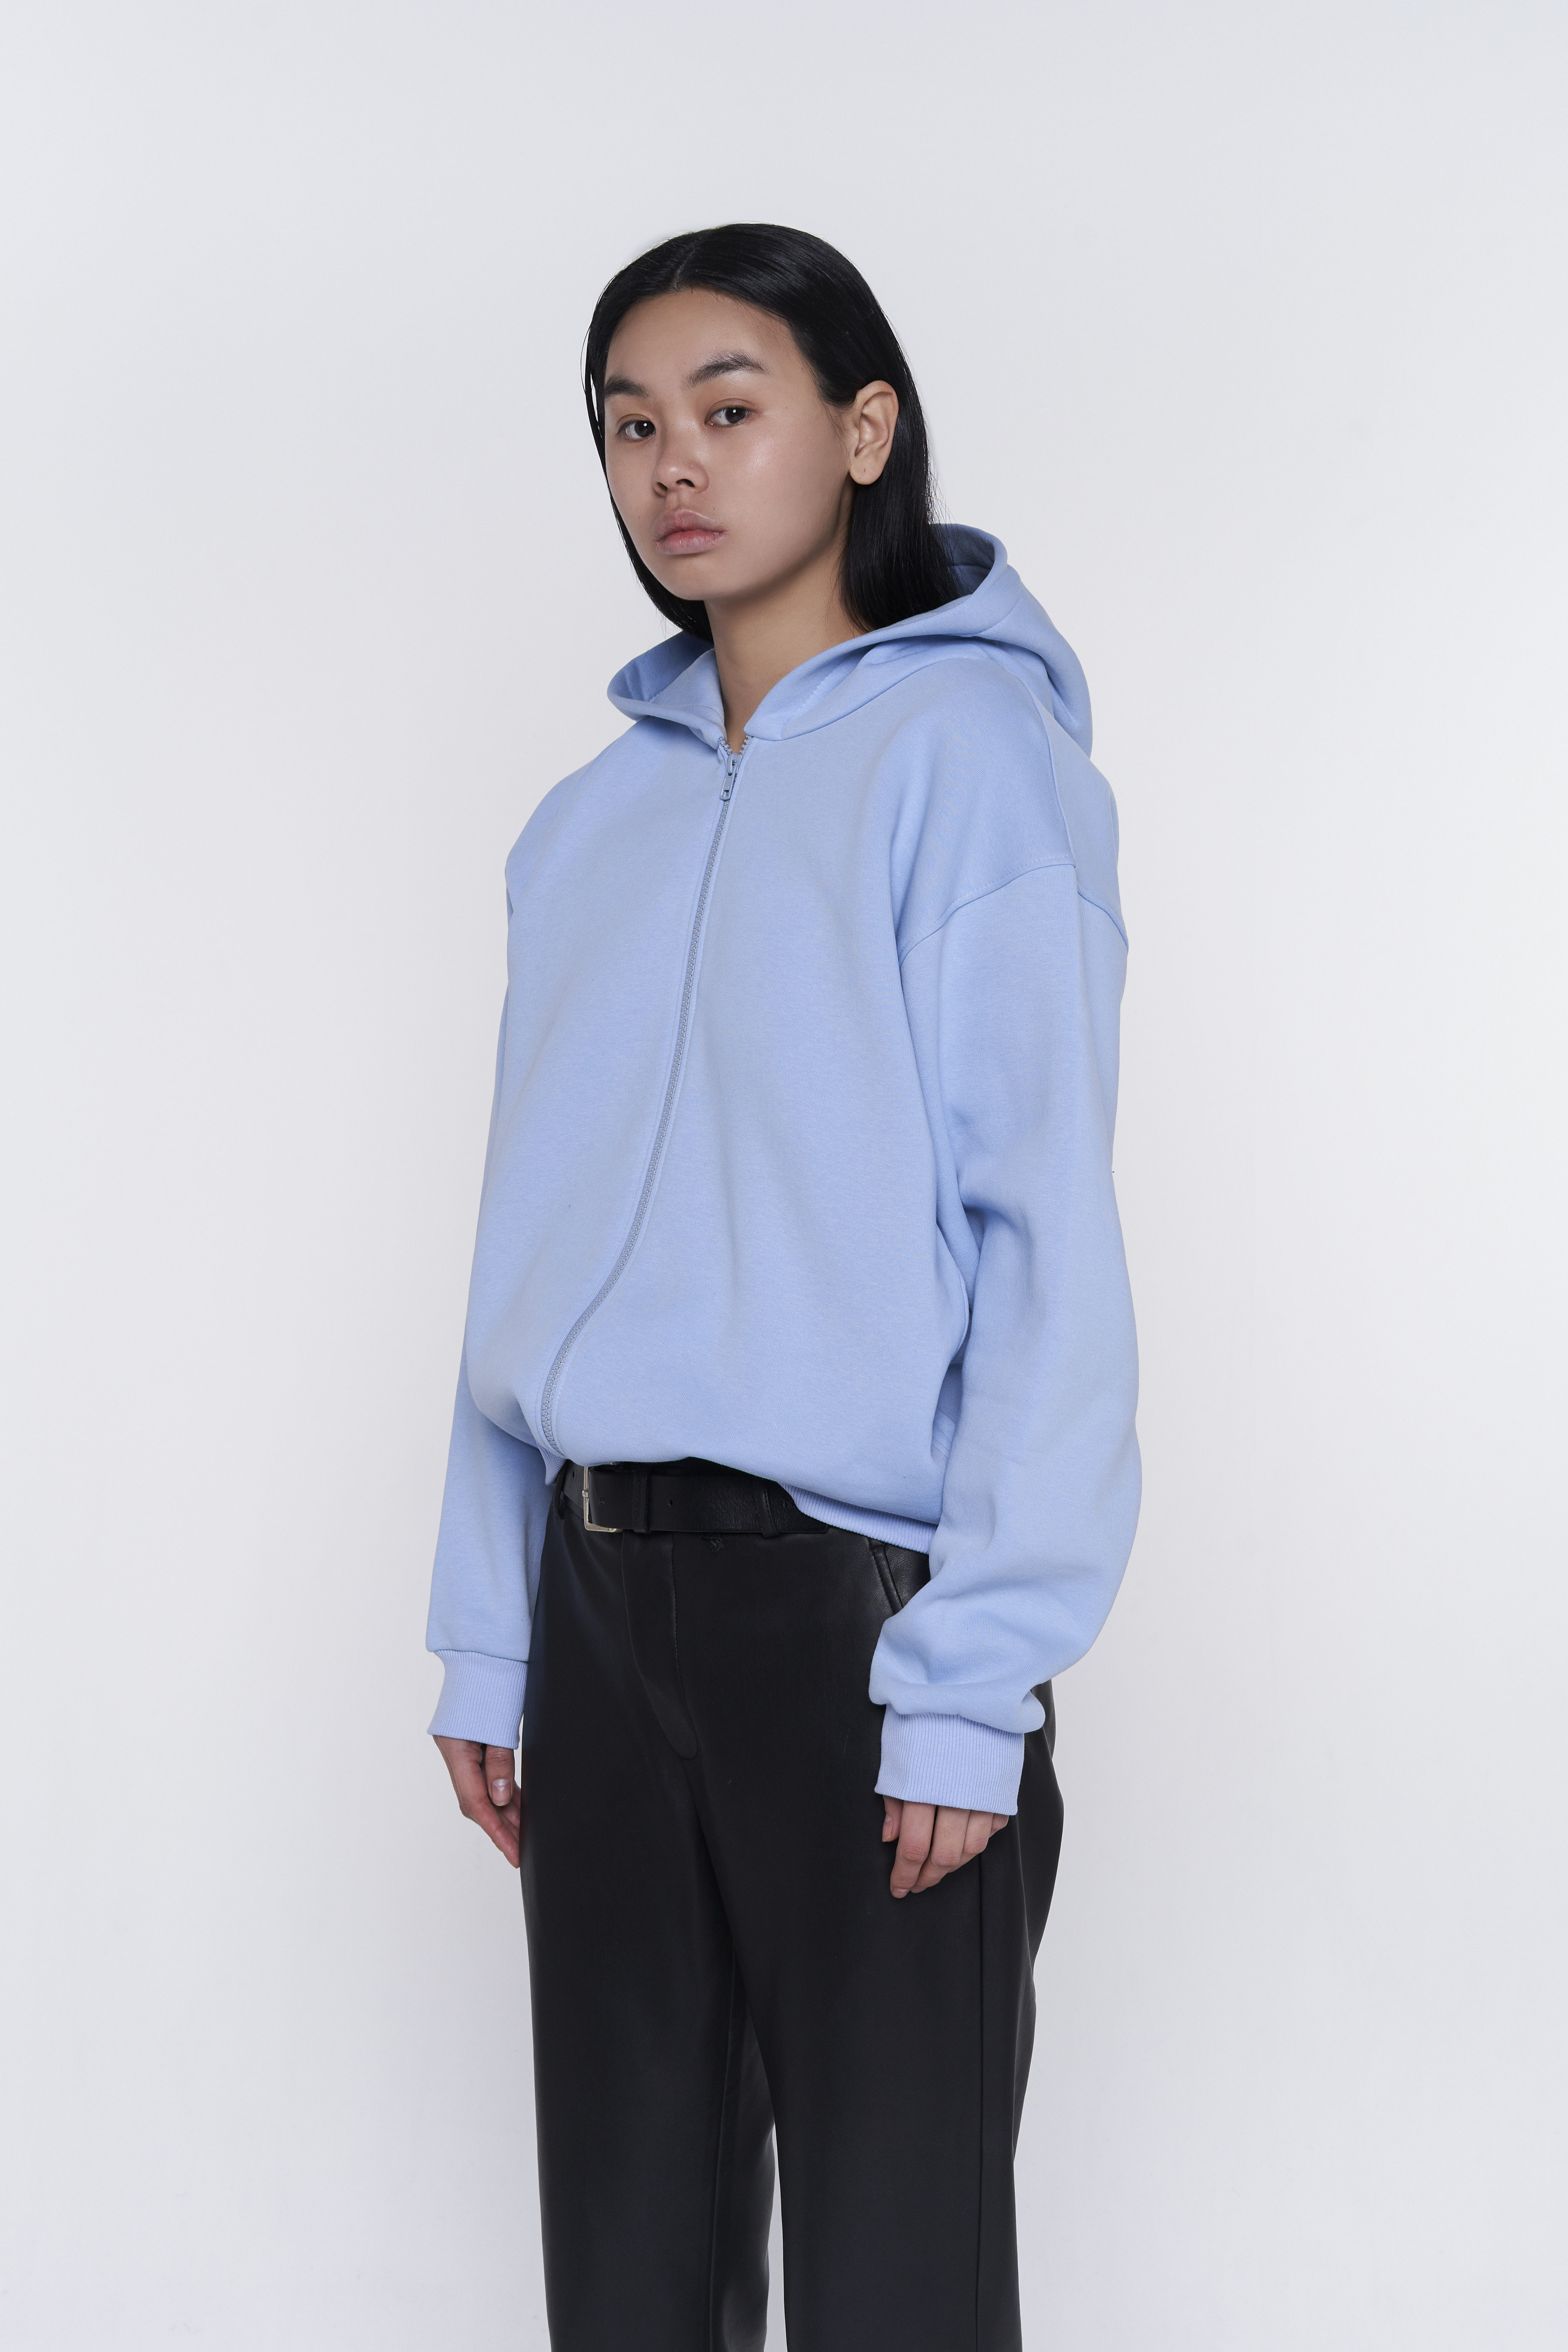 zip-up warm hoodie in blue color